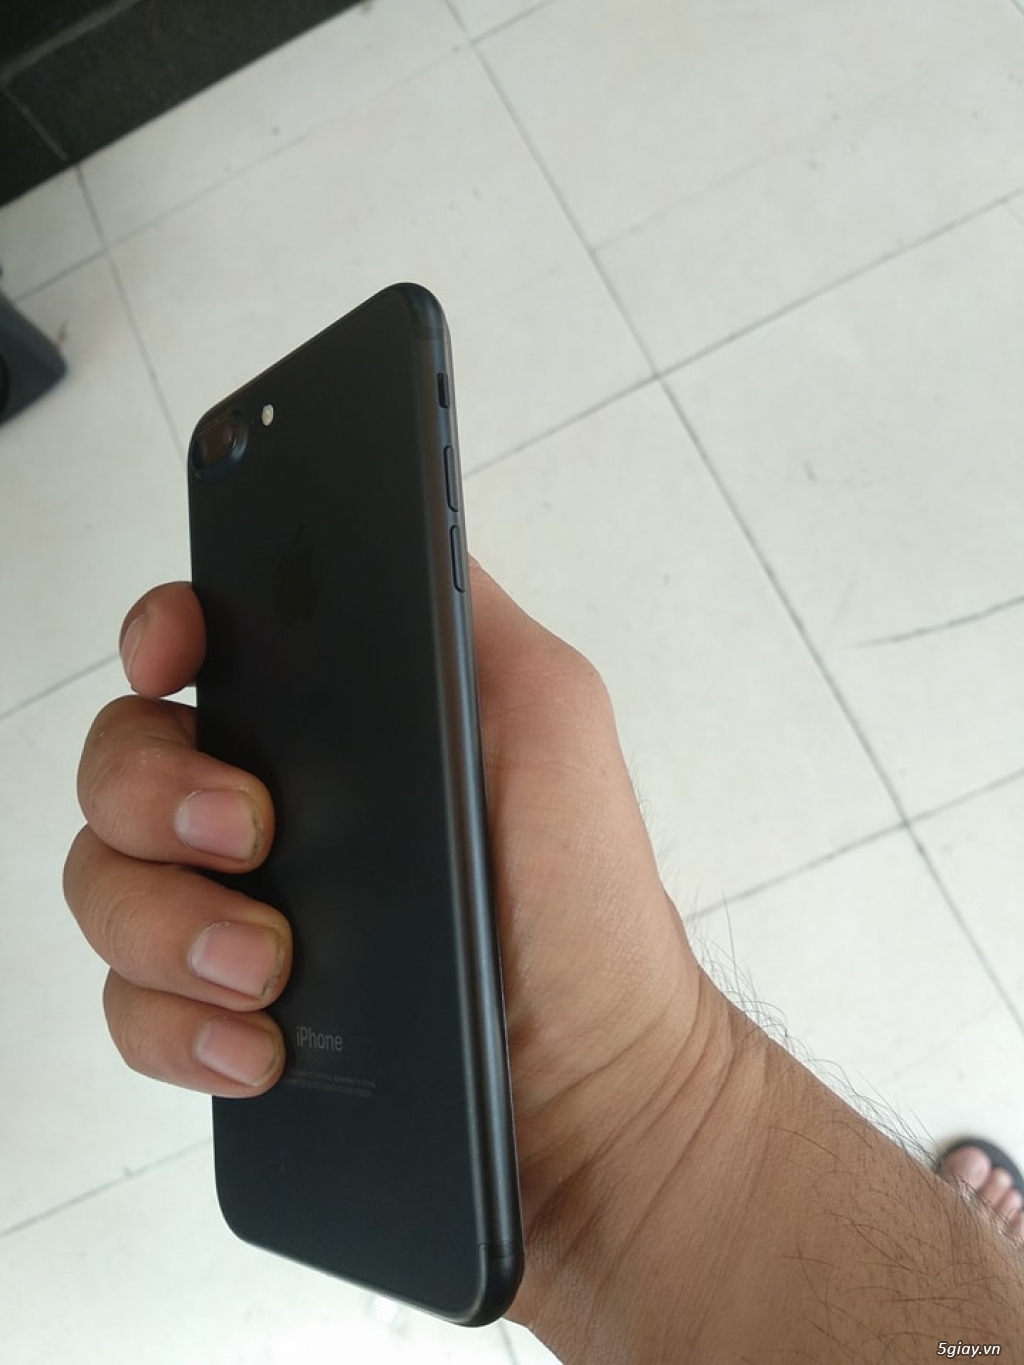 iphone 7 plus 128gb đen nhám bao zin 100%  cần bán để lên đời !!!! - 4